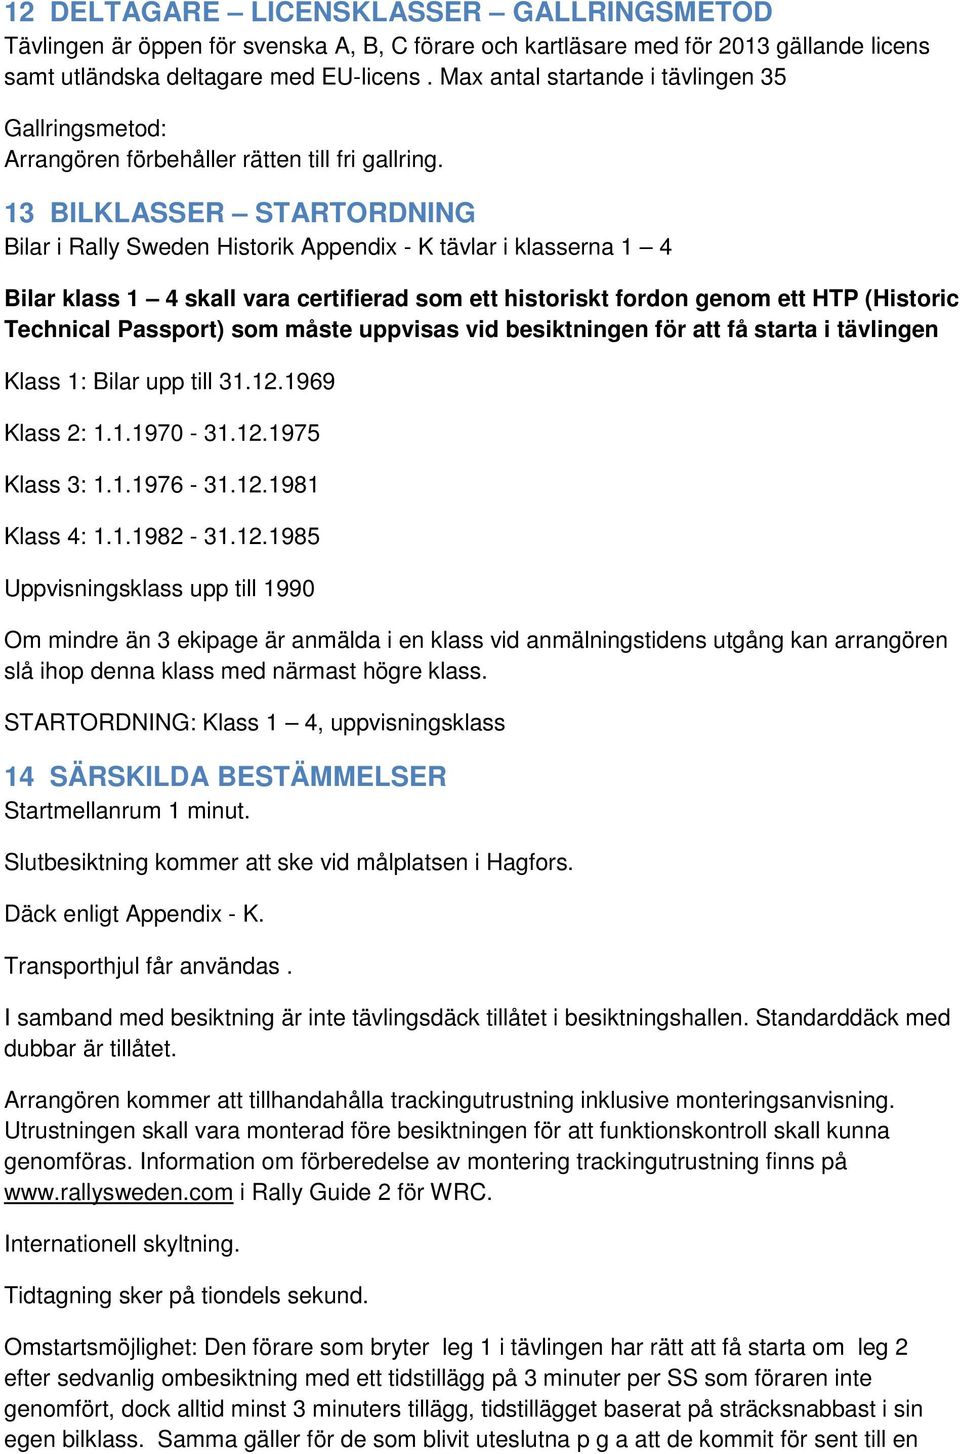 13 BILKLASSER STARTORDNING Bilar i Rally Sweden Historik Appendix - K tävlar i klasserna 1 4 Bilar klass 1 4 skall vara certifierad som ett historiskt fordon genom ett HTP (Historic Technical